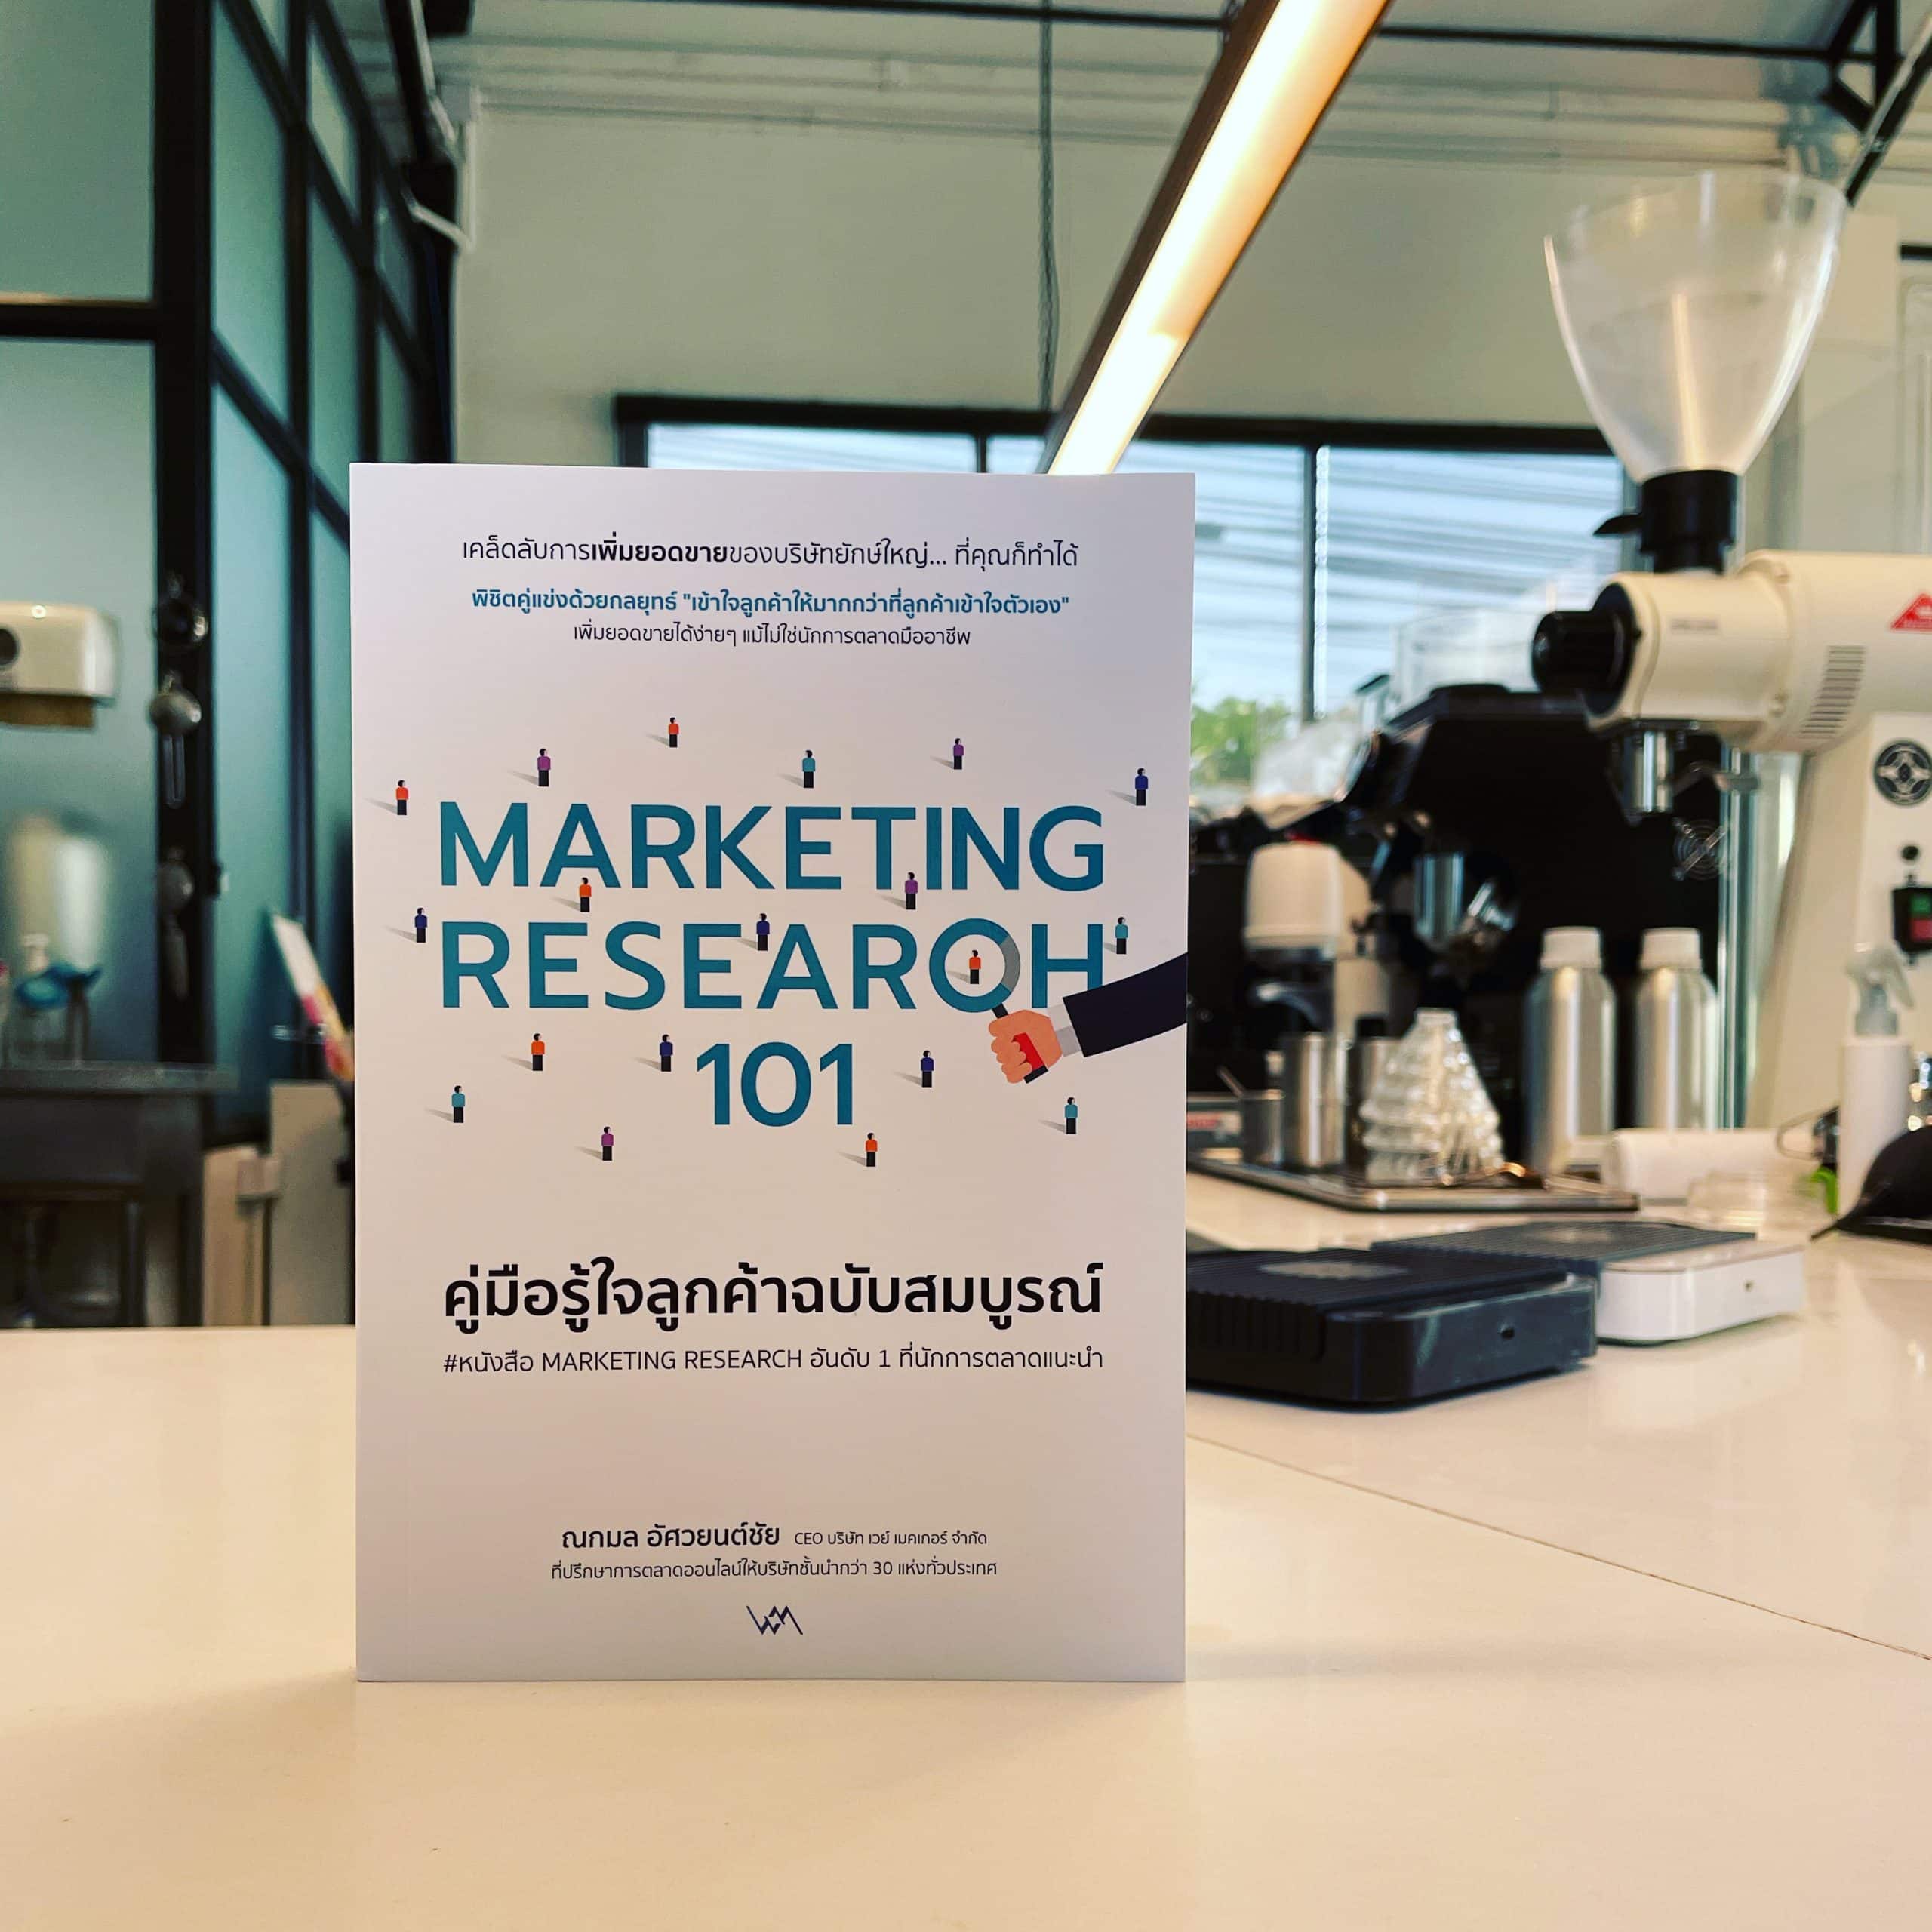 สรุปรีวิวหนังสือ Marketing Research 101 คู่มือการทำรีเสิร์จเพื่อหา Consumer Insight แบบง่ายๆ สำหรับนักการตลาดมือใหม่ และทุกคนที่สนใจเรื่องนี้